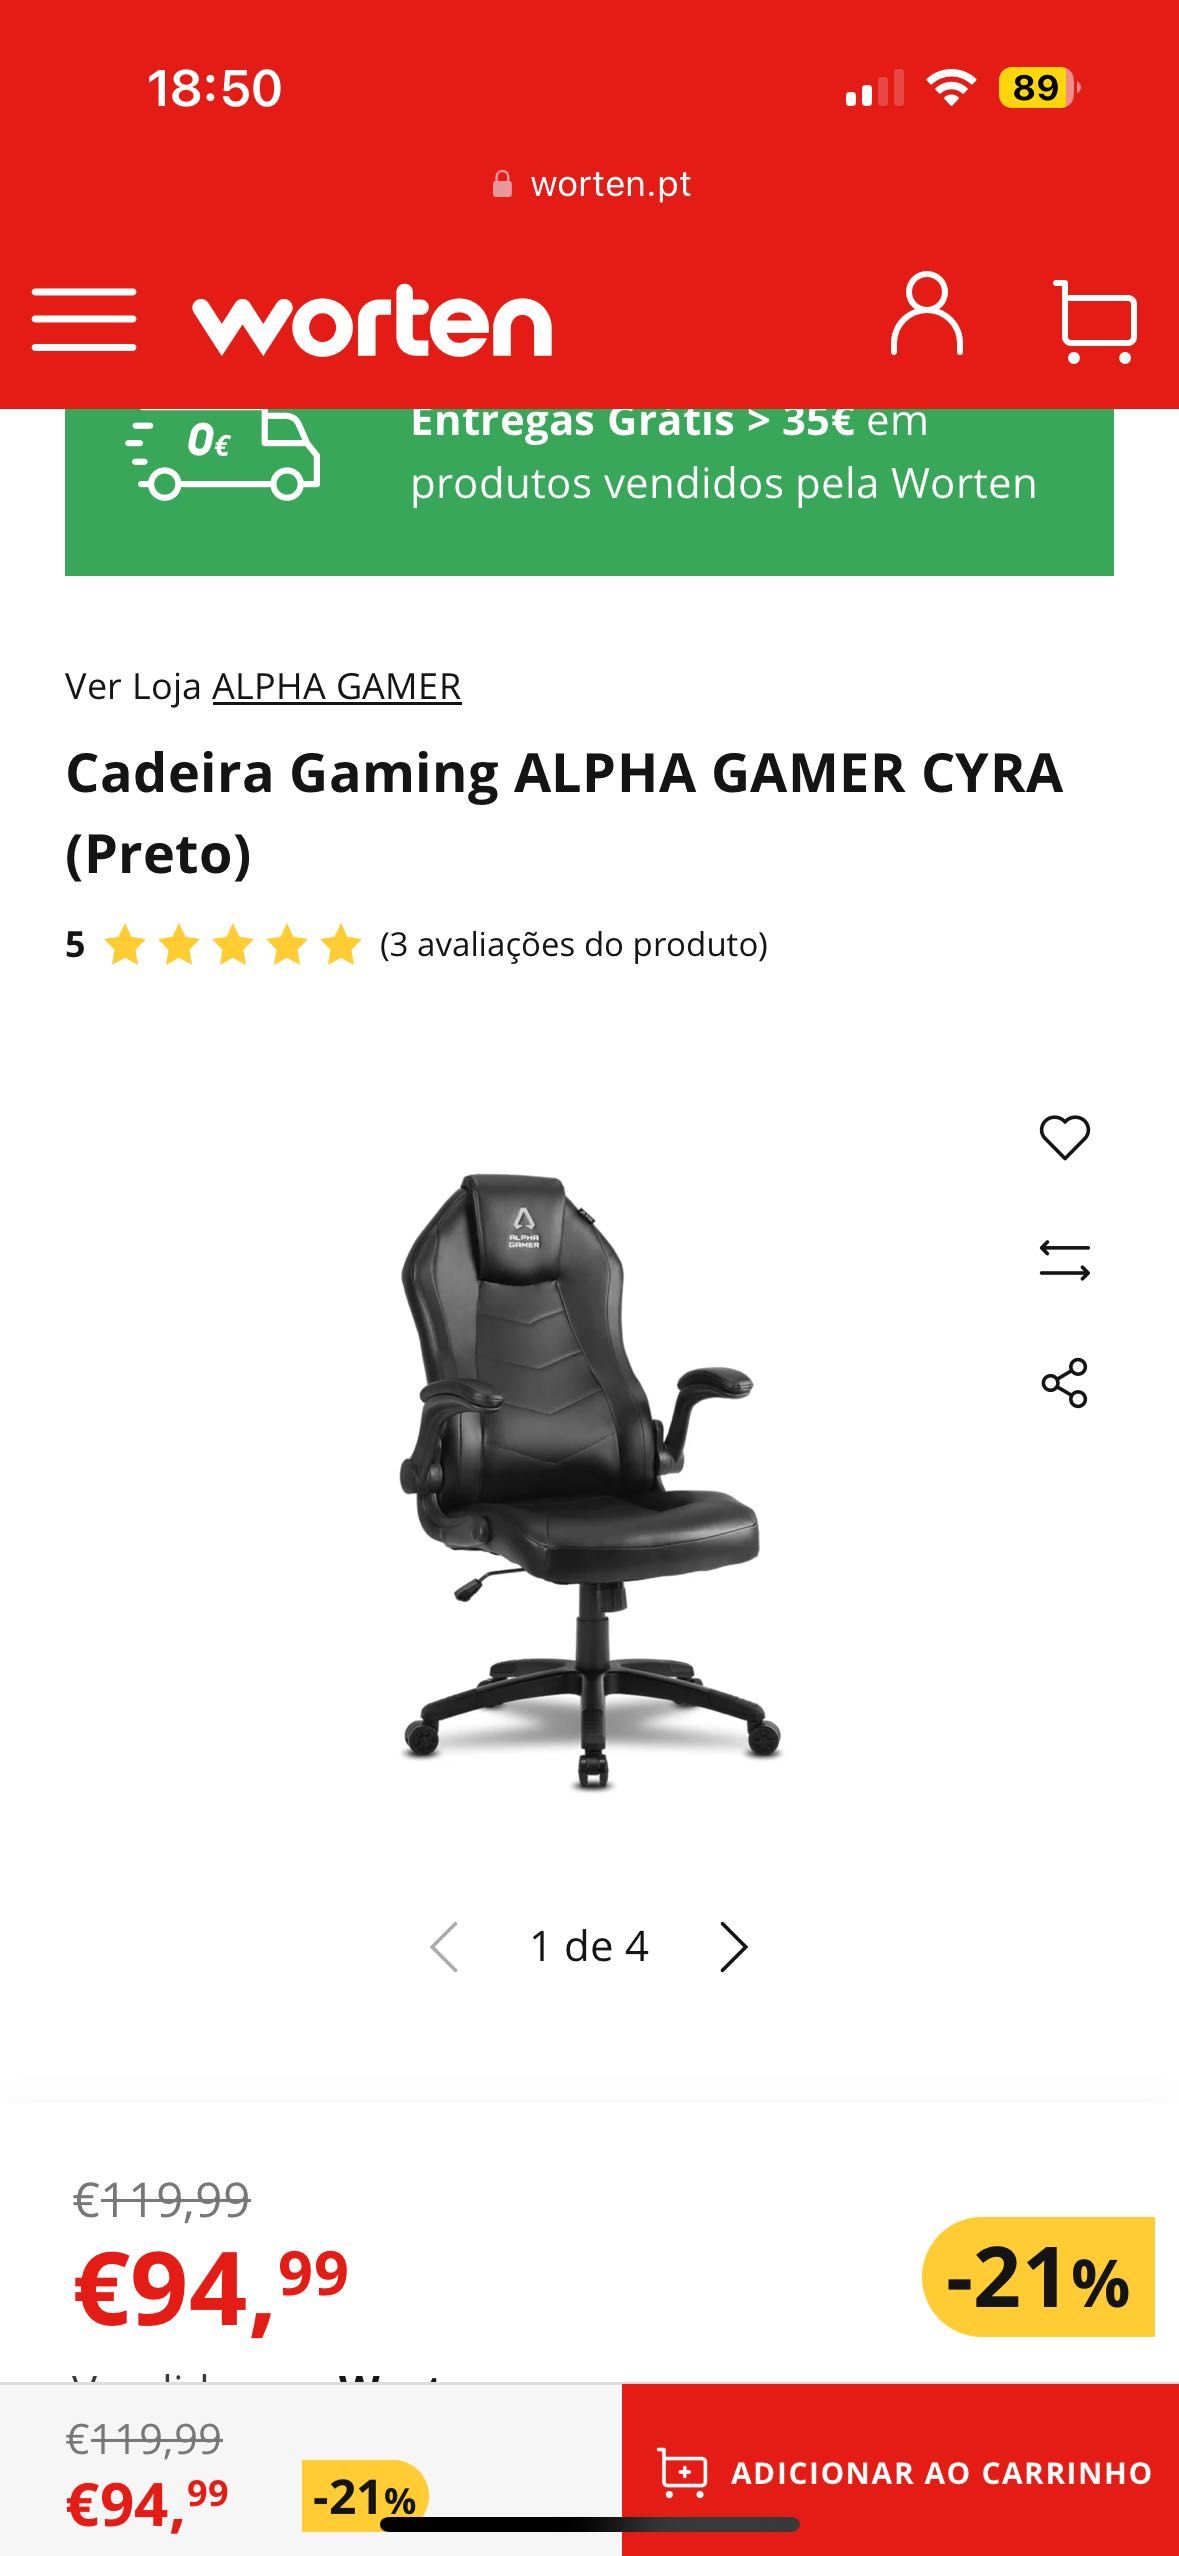 Cadeira Gaming ALPHA GAMER CYRA (Preto)